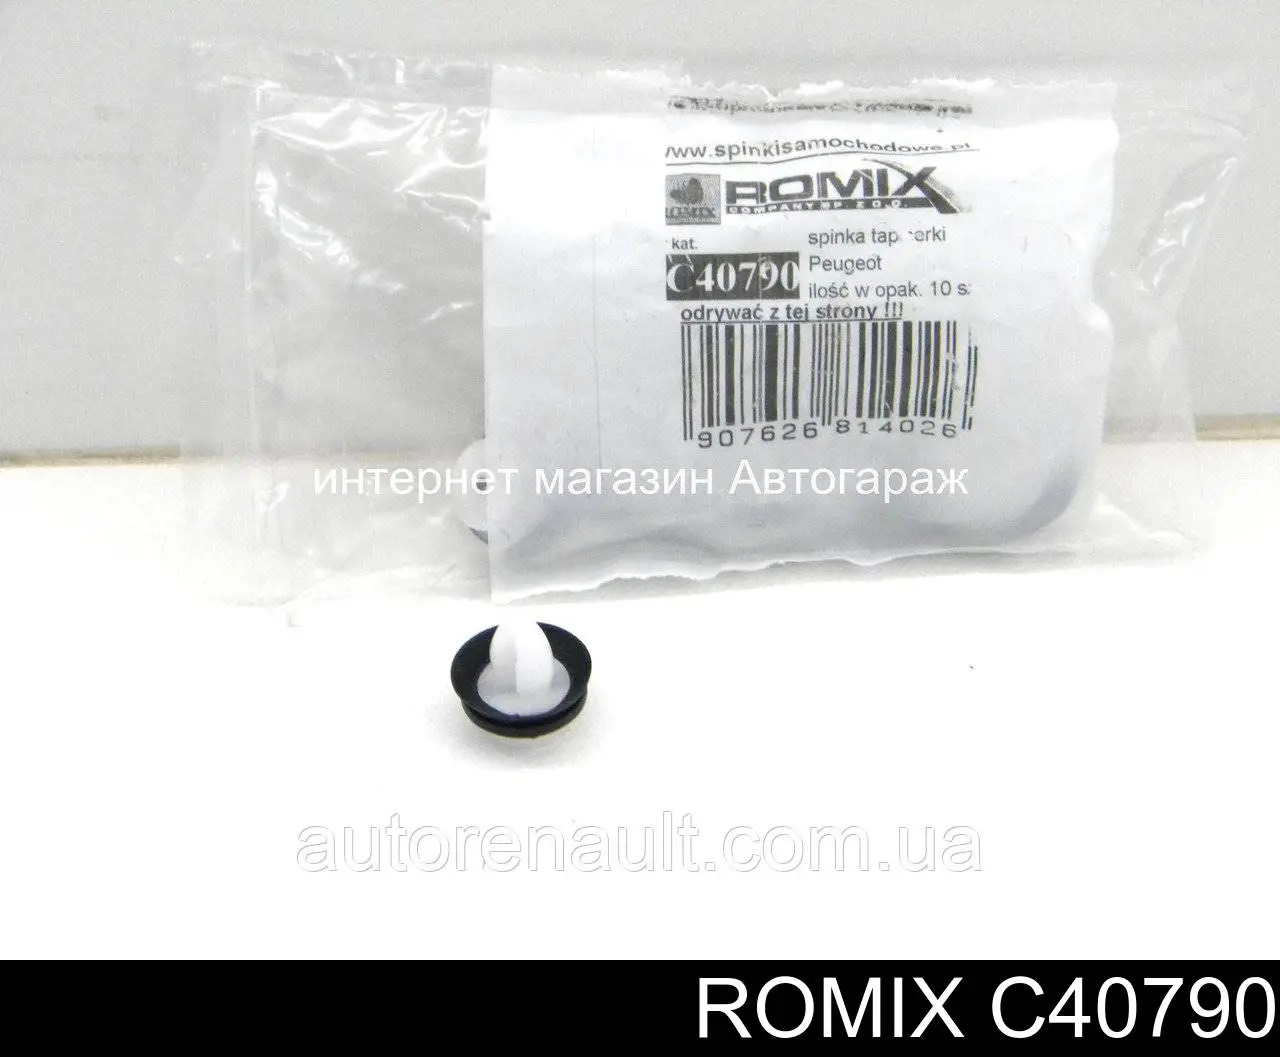 C40790 Romix cápsula (prendedor de fixação de revestimento da porta)